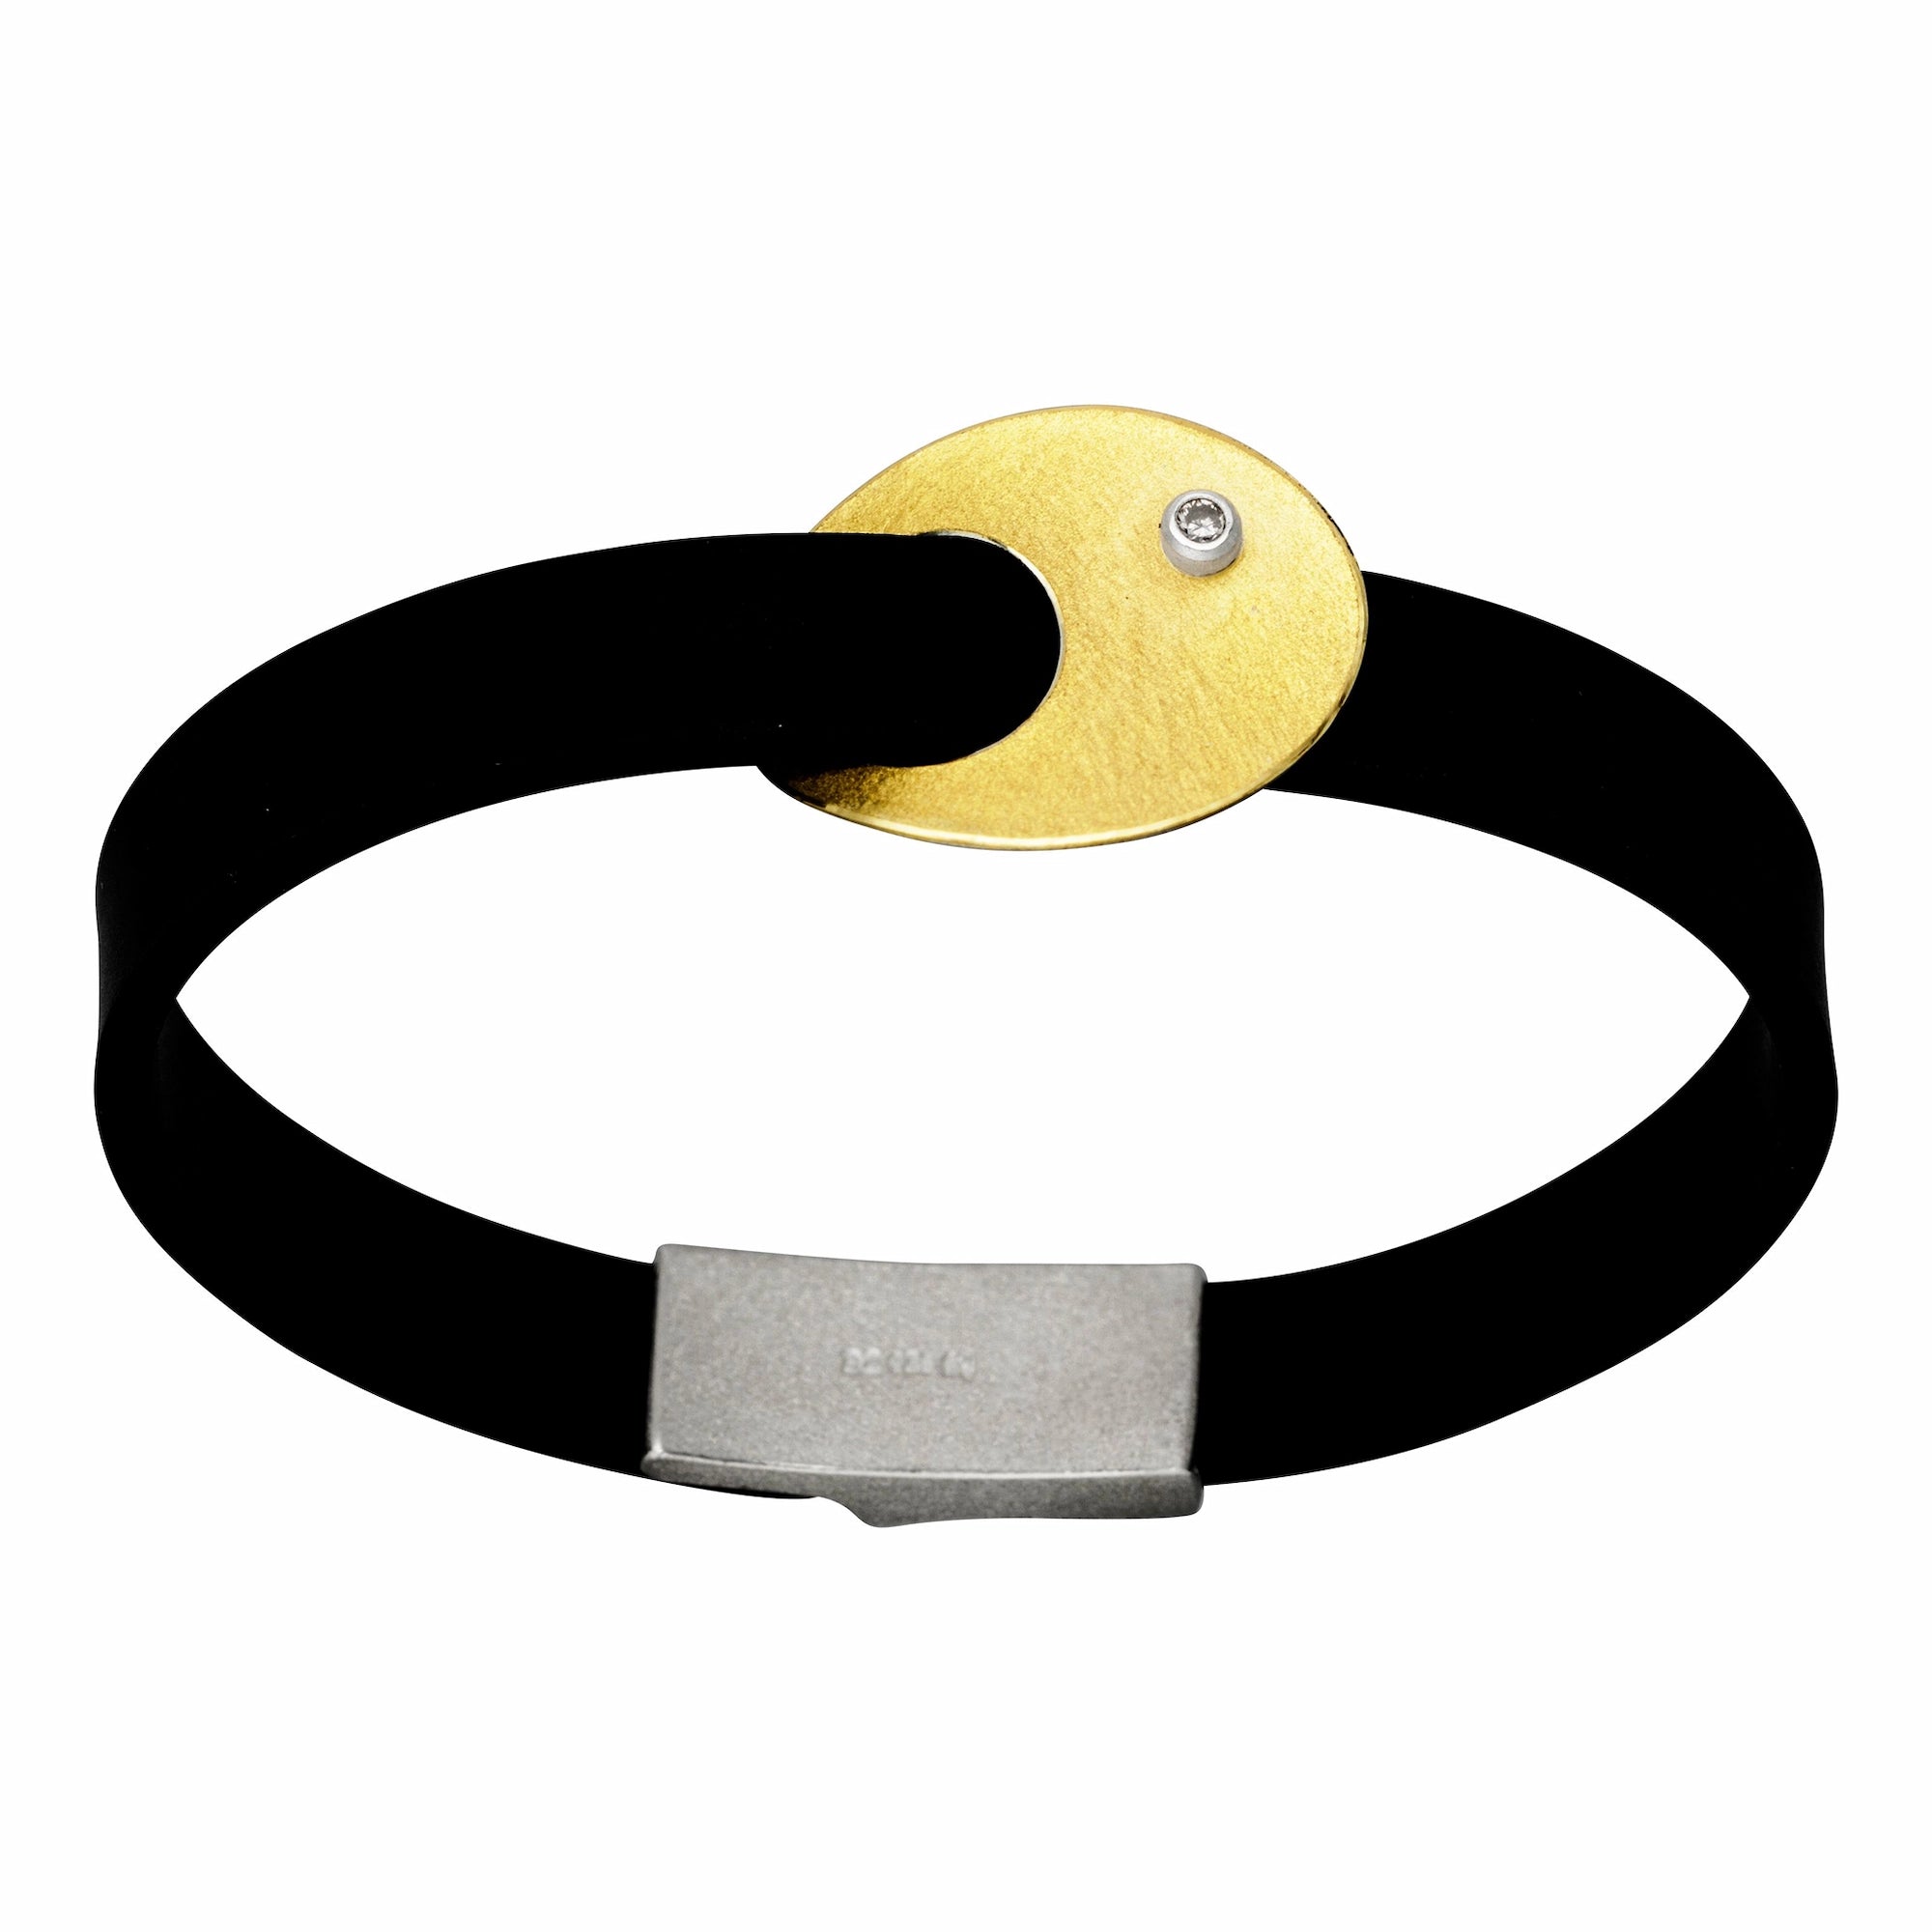 Produktfotografie des Manu Armbands mit Goldauflage und Brillanten an einem schwarzem Naturkautschukband 